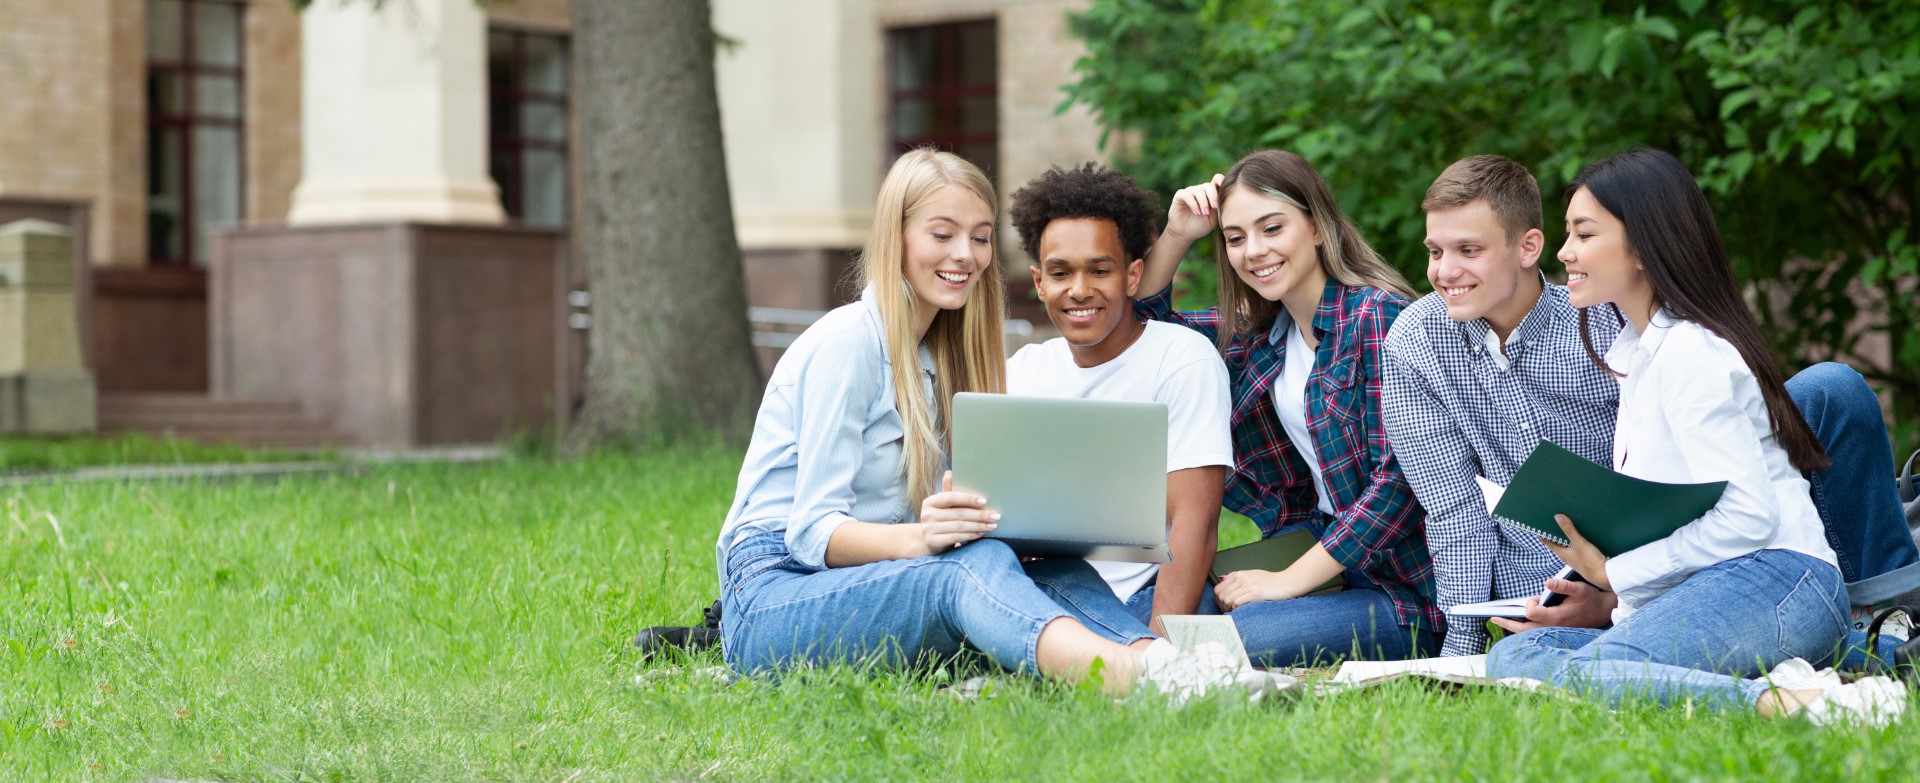 Studenten in een grasveld met laptop op schoot